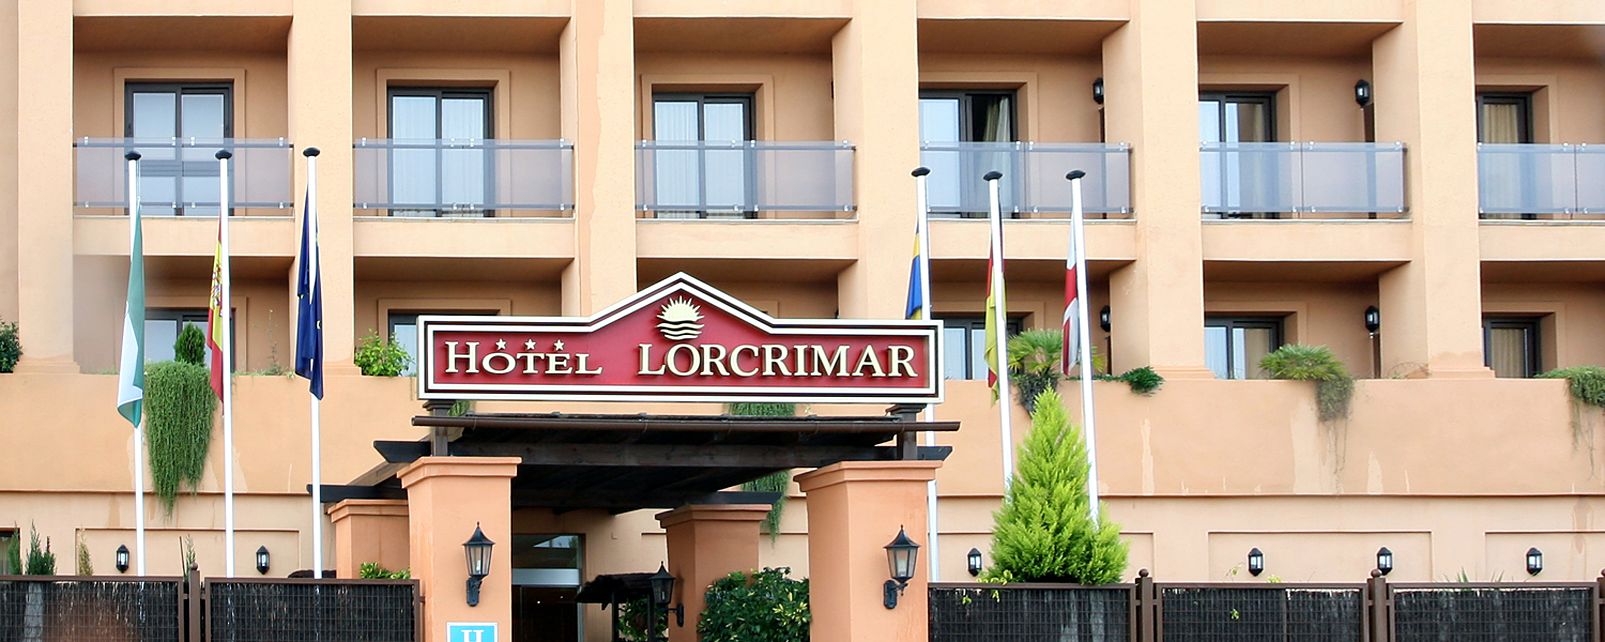 Hotel Lorcrimar Hotel Marbella